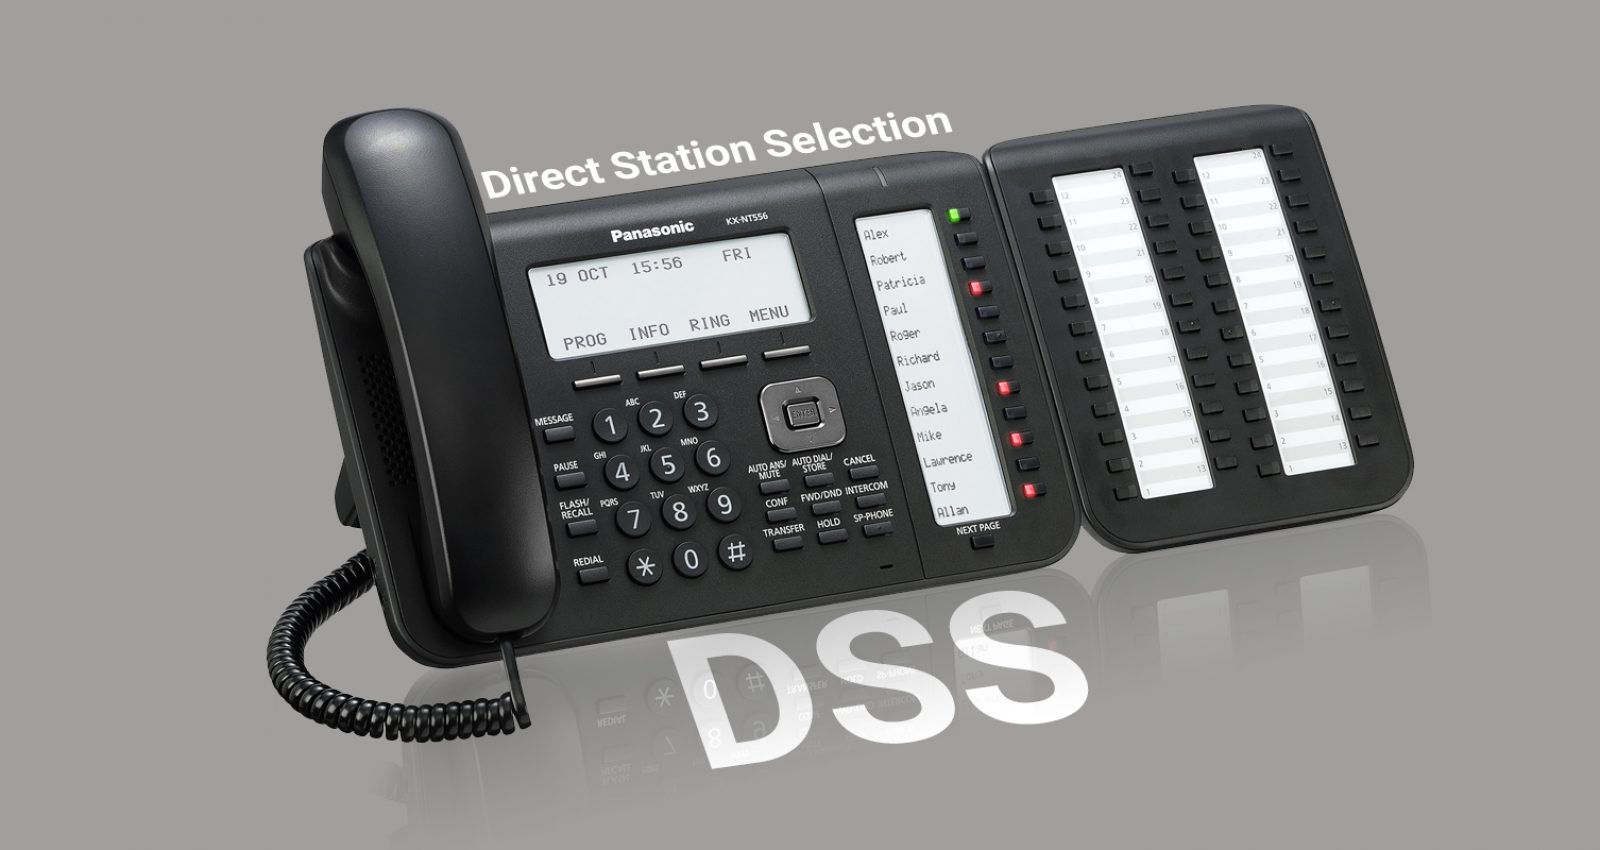 تعریف دکمه های DSS -دسترسی سریع